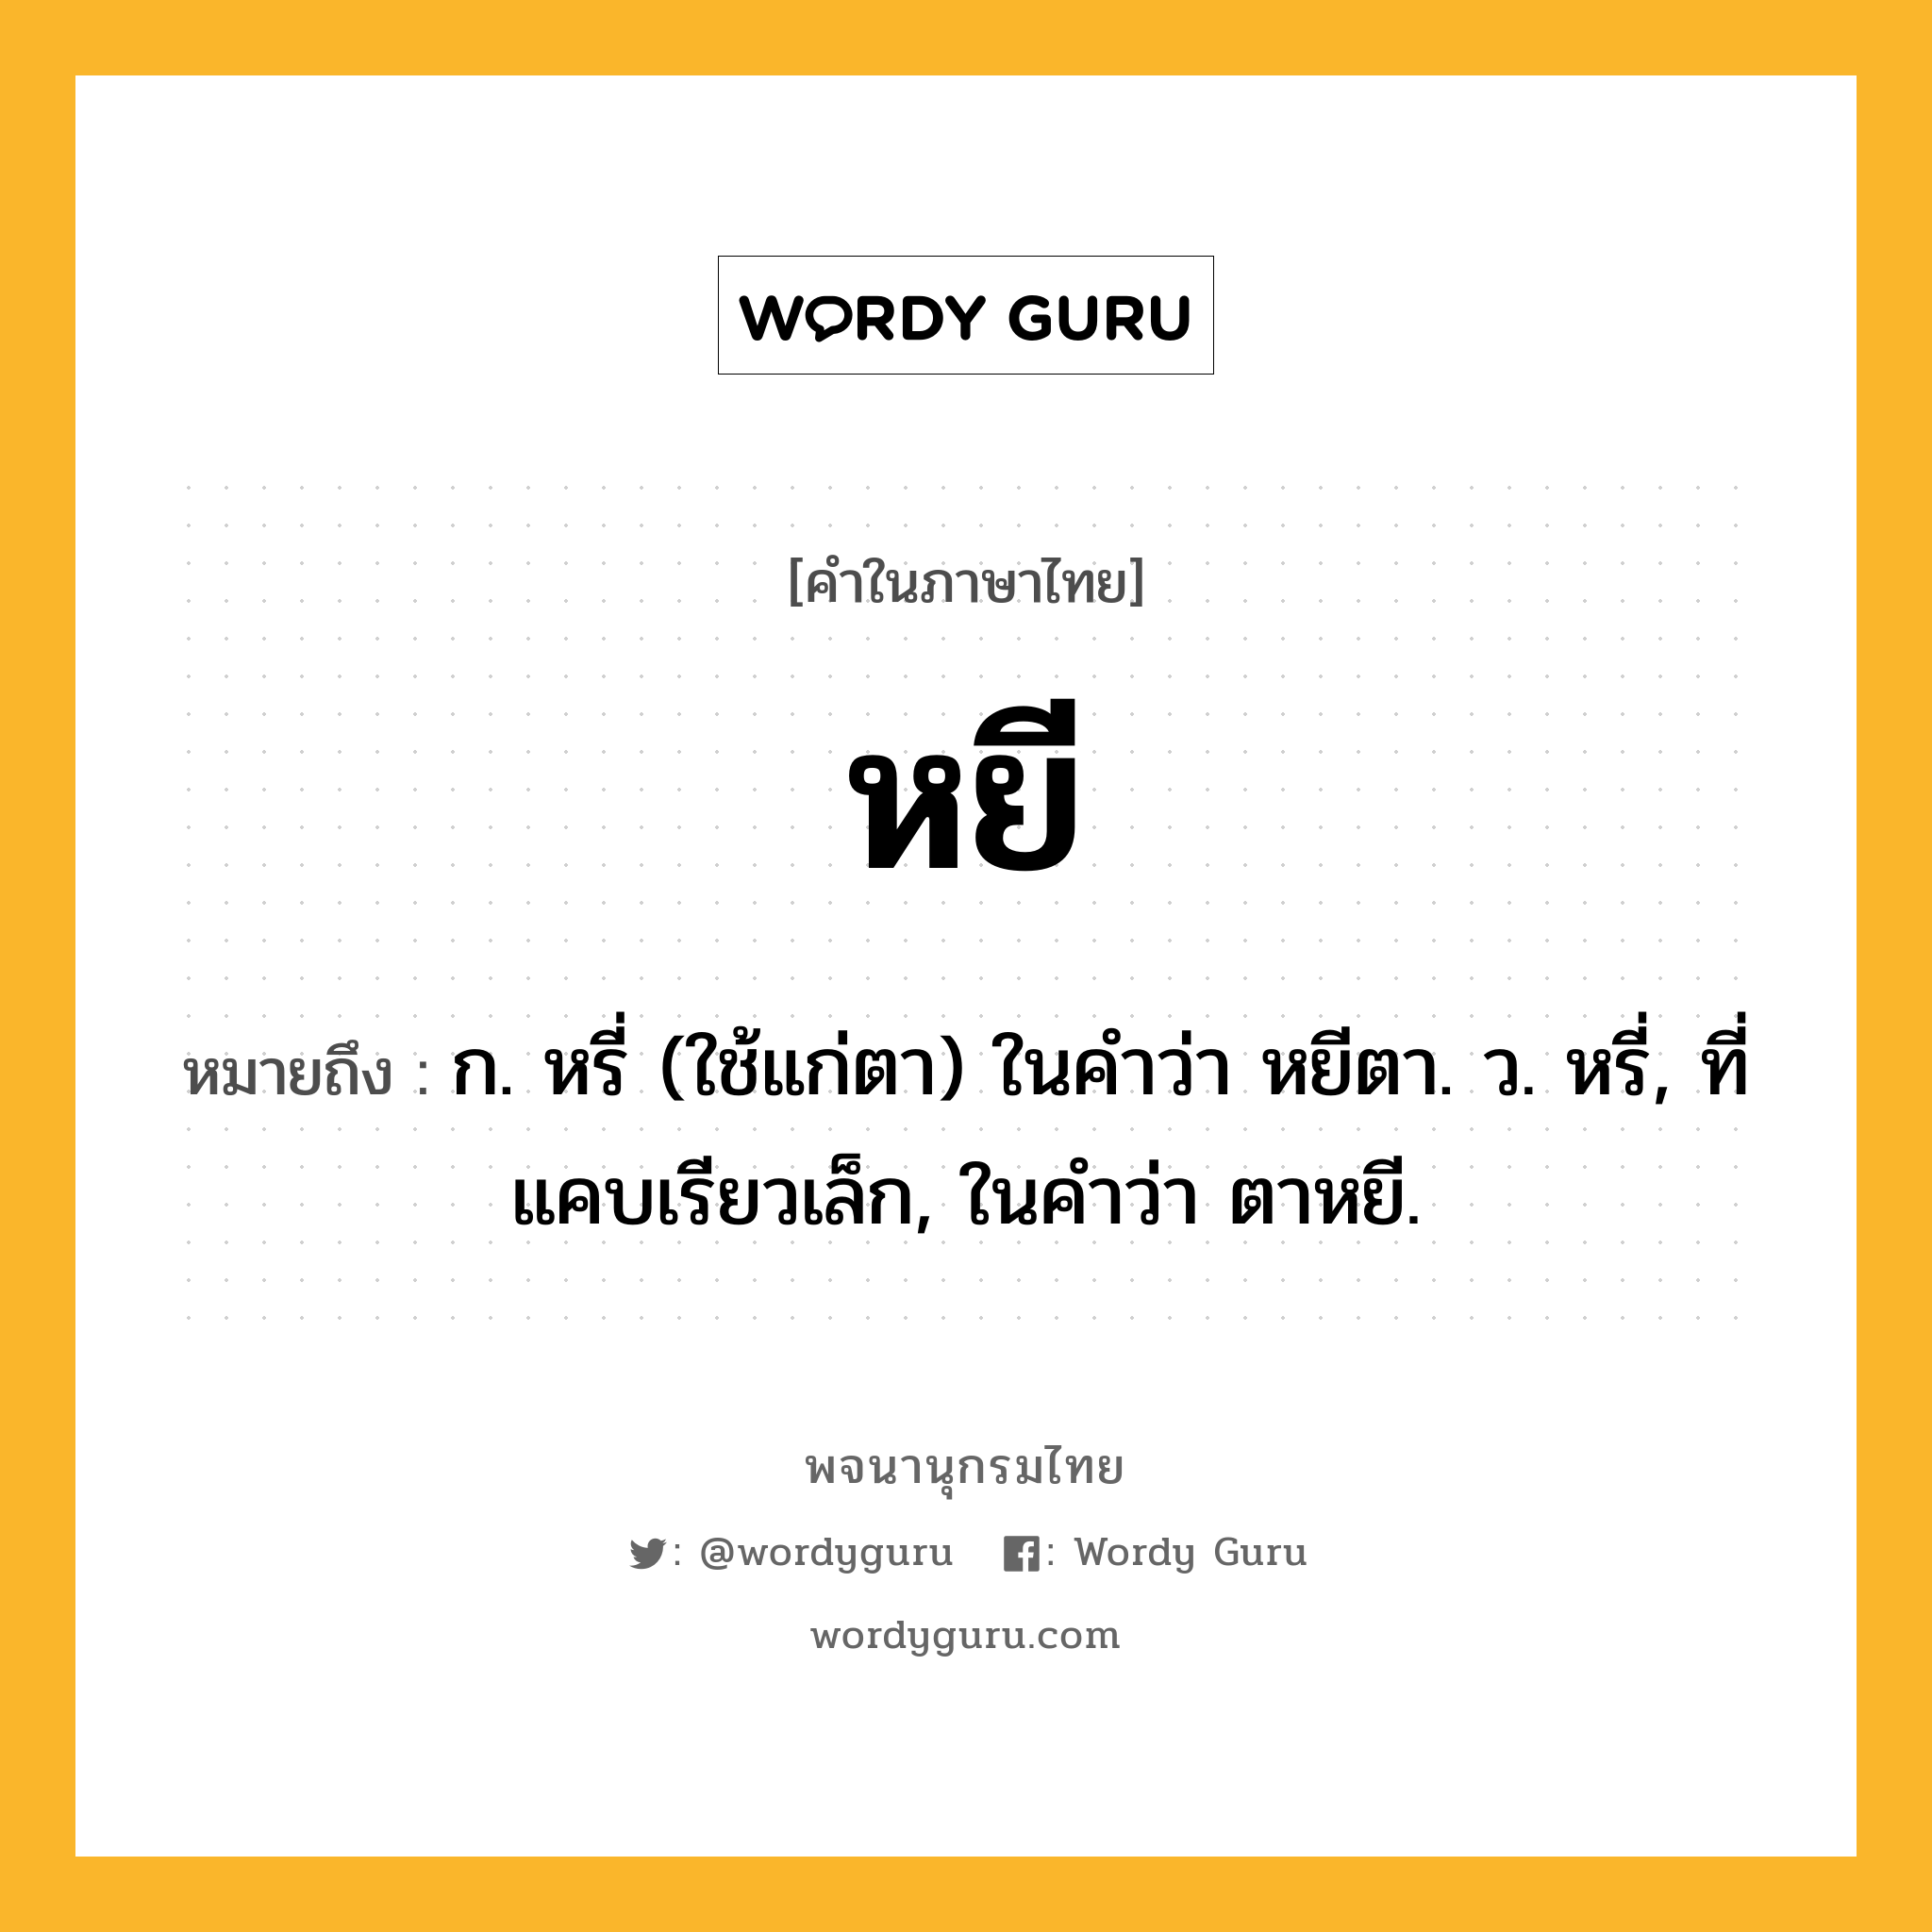 หยี ความหมาย หมายถึงอะไร?, คำในภาษาไทย หยี หมายถึง ก. หรี่ (ใช้แก่ตา) ในคำว่า หยีตา. ว. หรี่, ที่แคบเรียวเล็ก, ในคำว่า ตาหยี.